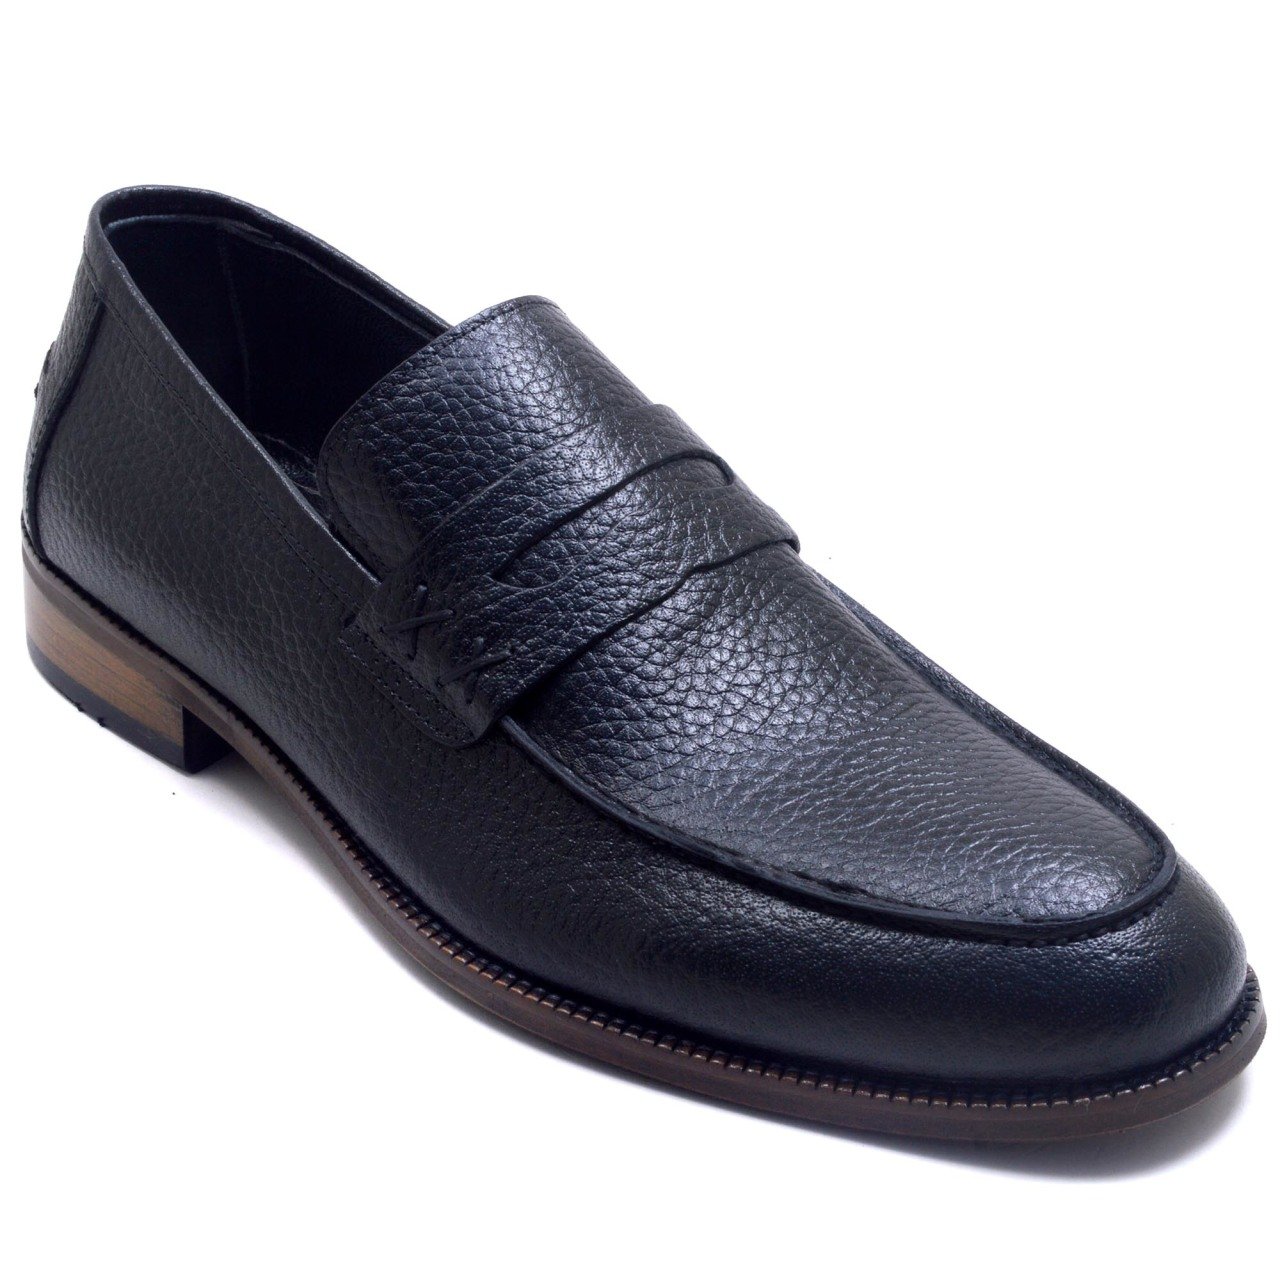 724-DR Bağcıksız Jurdan Erkek Deri Ayakkabı - Siyah